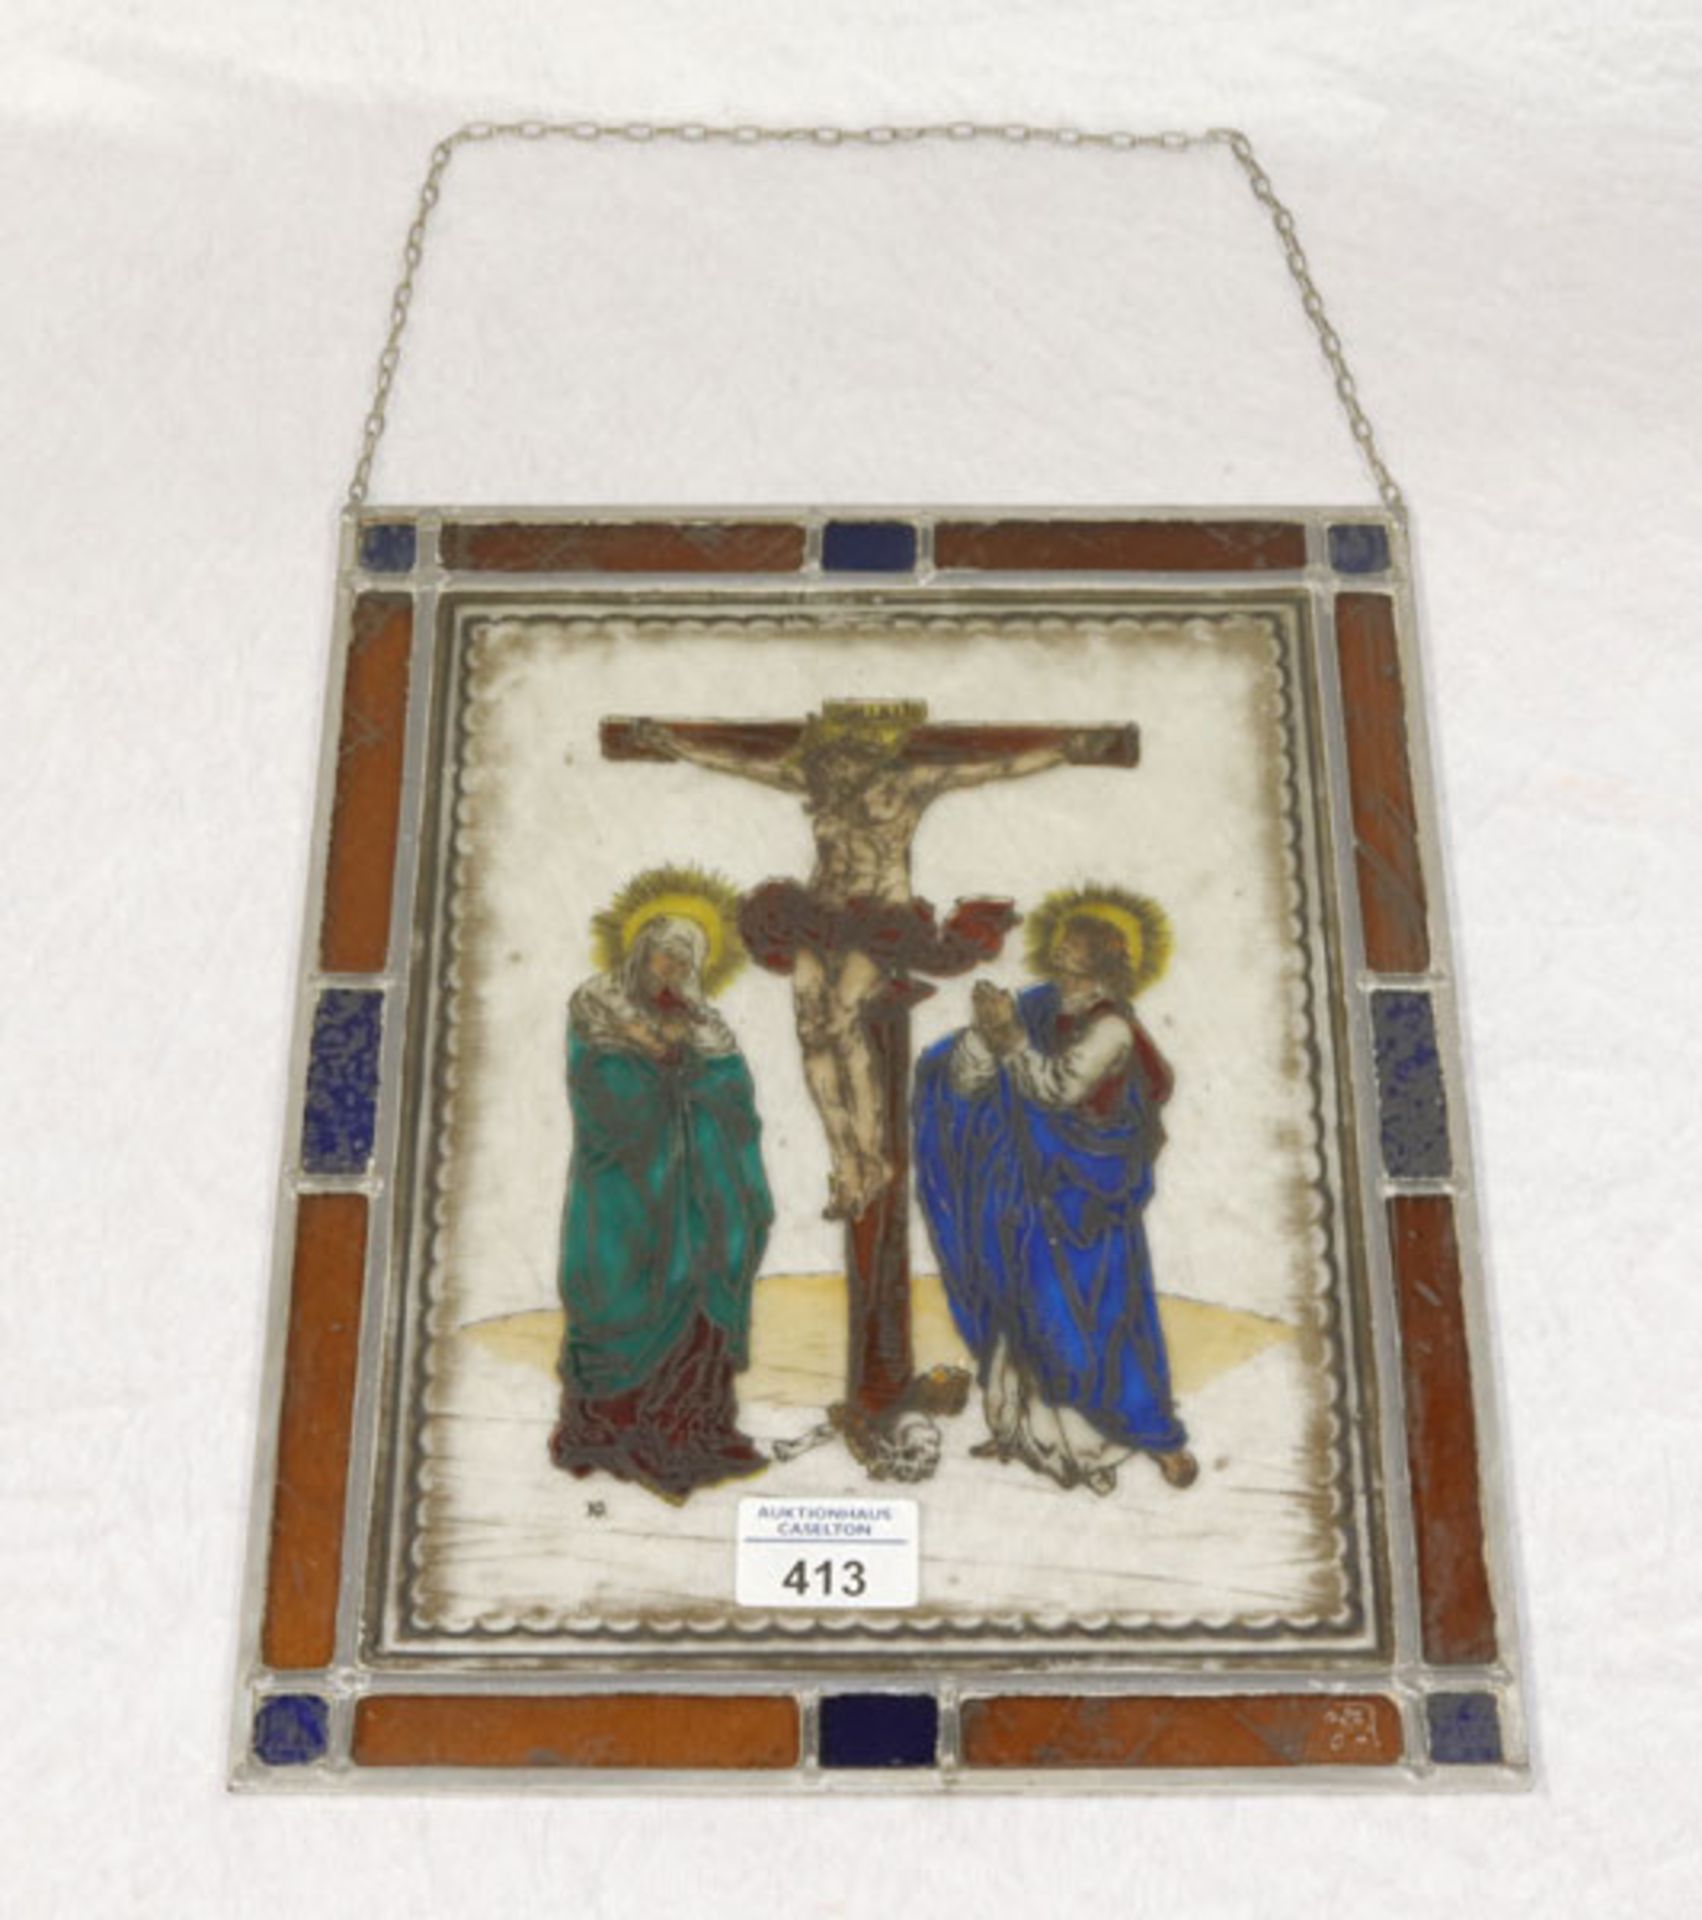 Fenster-Glasbild 'Christus am Kreuz mit Maria und Johannes', monogrammiert KG, 33 cm x 26,5 cm